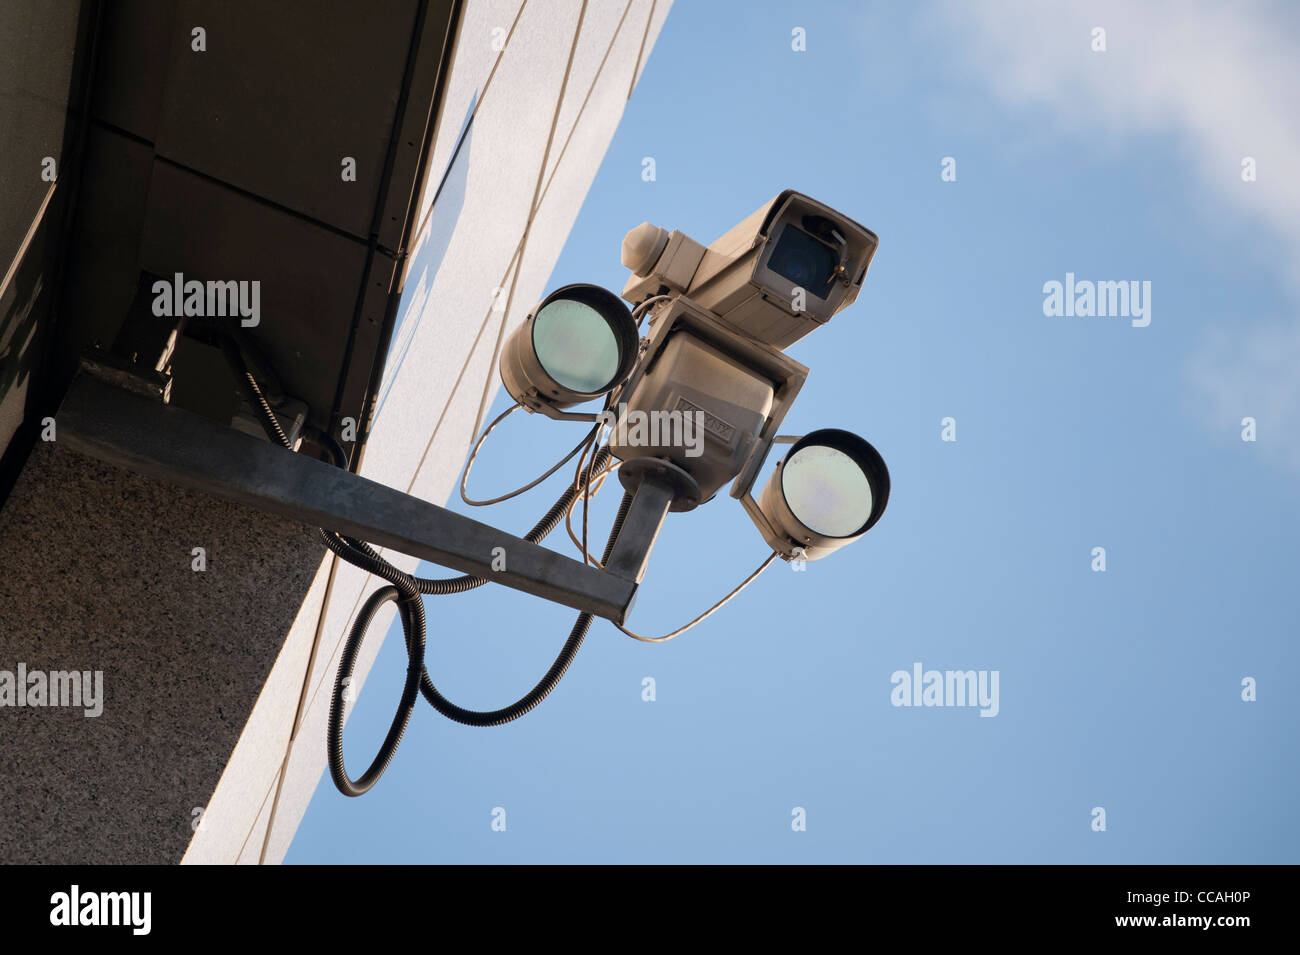 Eine CCTV-Kamera in einem Gebäude an einen hellen und klaren Himmel Tag befestigt. Stockfoto